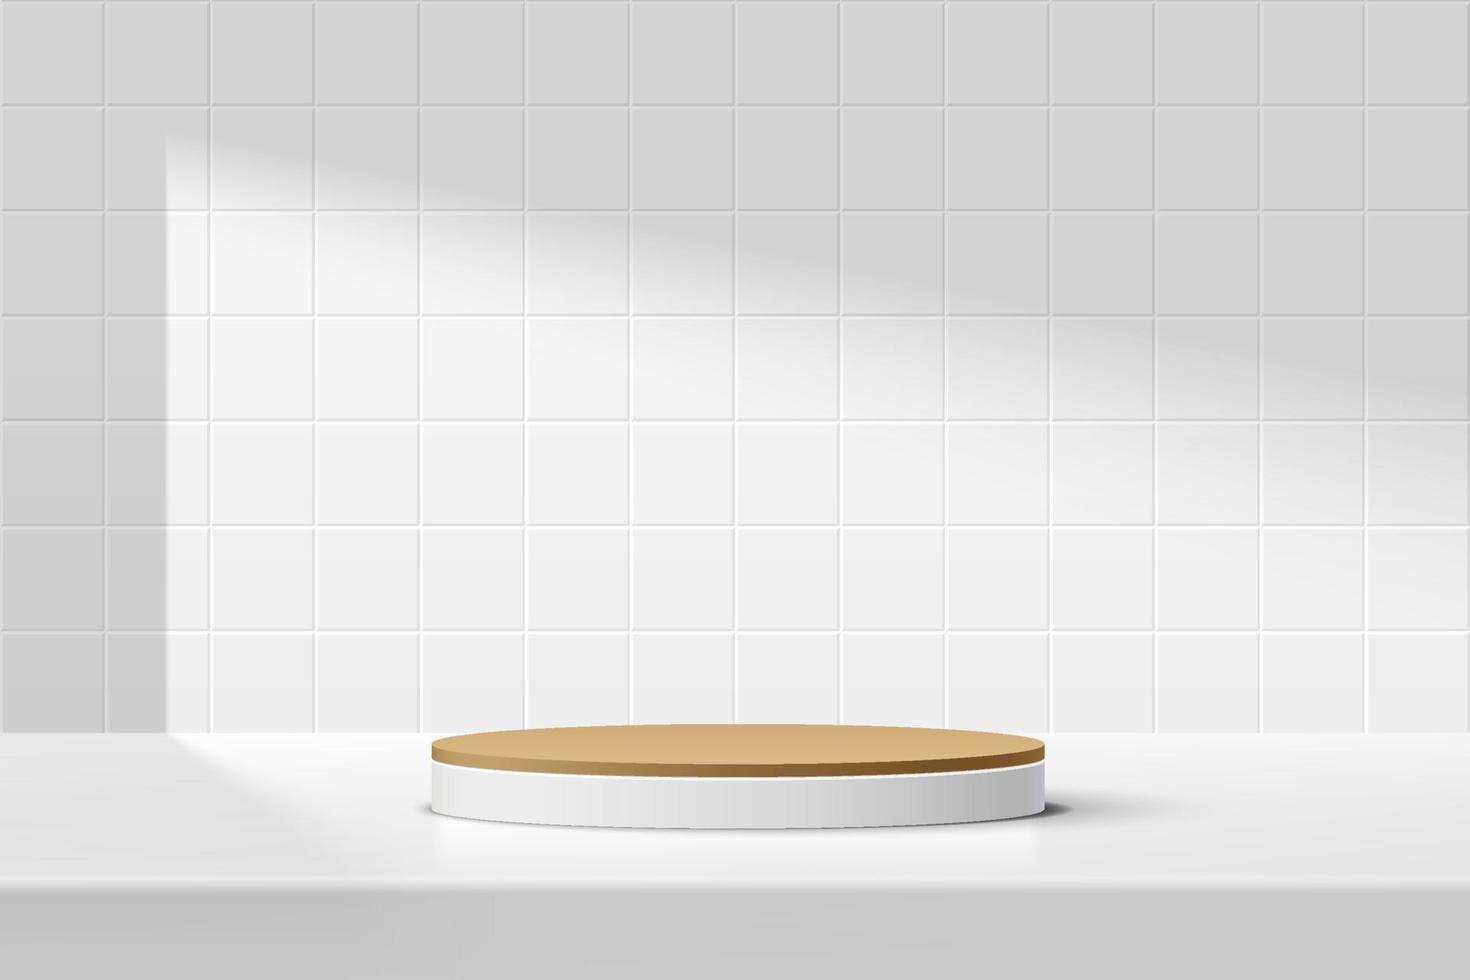 abstracte 3d witte, bruine cilinder sokkel podium op de tafel met witte vierkante tegel textuur wandscène. vector die minimaal geometrisch platformontwerp in schaduw voor productvertoningspresentatie teruggeeft.